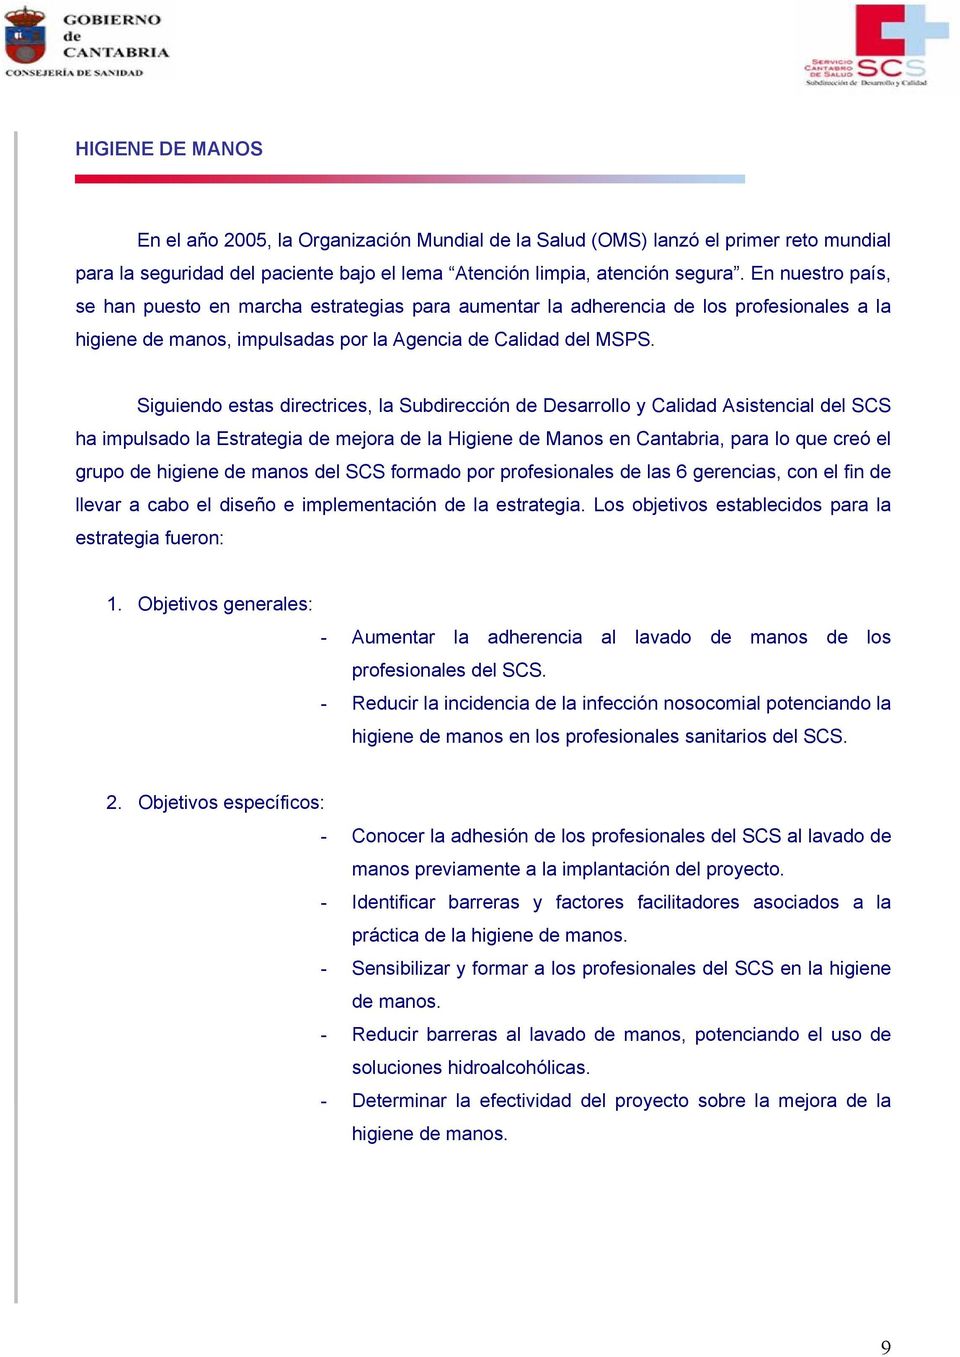 Siguiendo estas directrices, la Subdirección de Desarrollo y Calidad Asistencial del SCS ha impulsado la Estrategia de mejora de la Higiene de Manos en Cantabria, para lo que creó el grupo de higiene